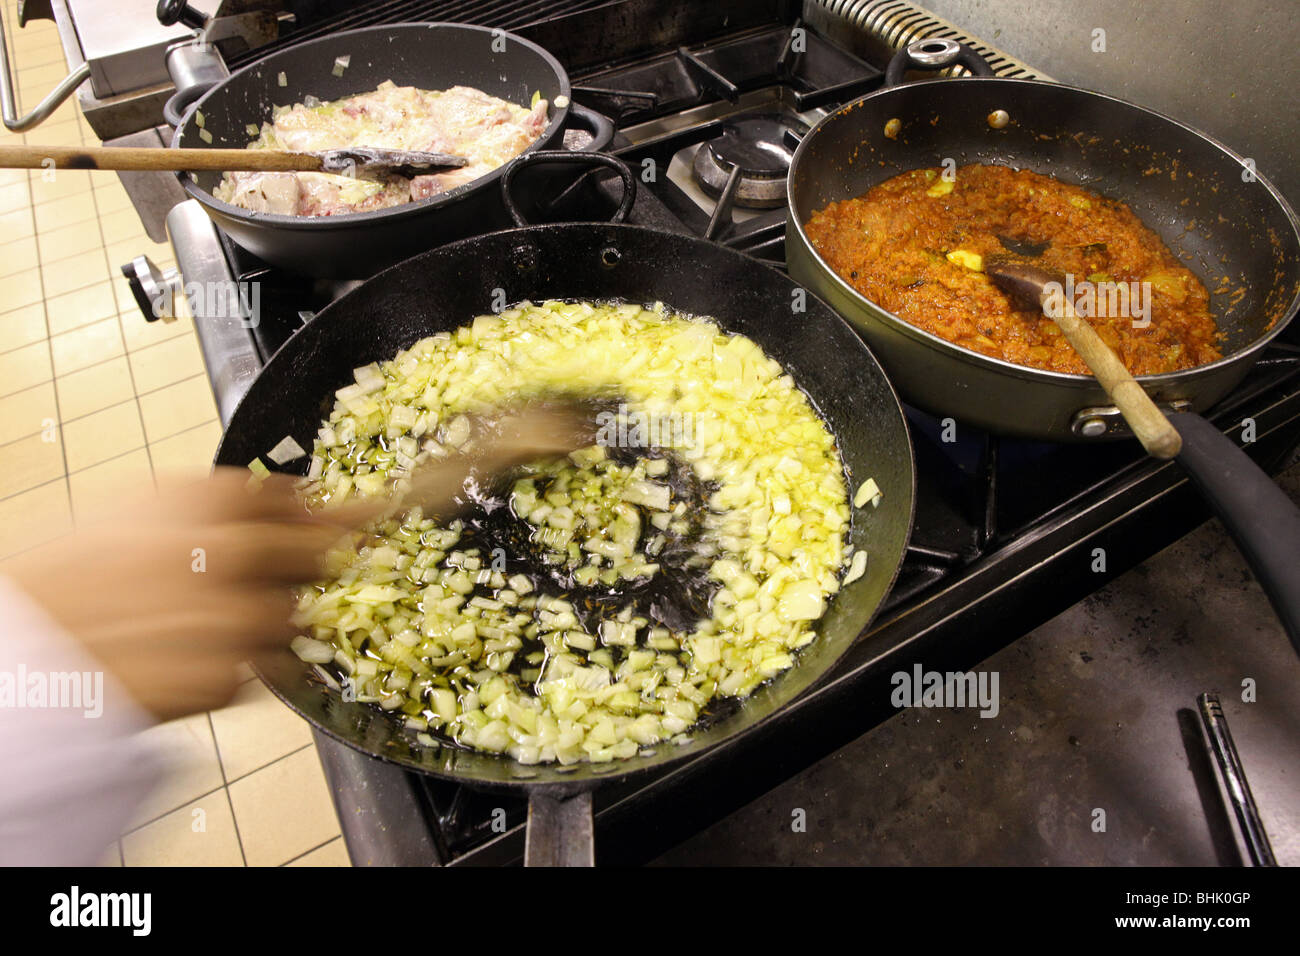 Curry viene cucinato in una padella sulla parte superiore di un forno in un ristorante nel Regno Unito Foto Stock